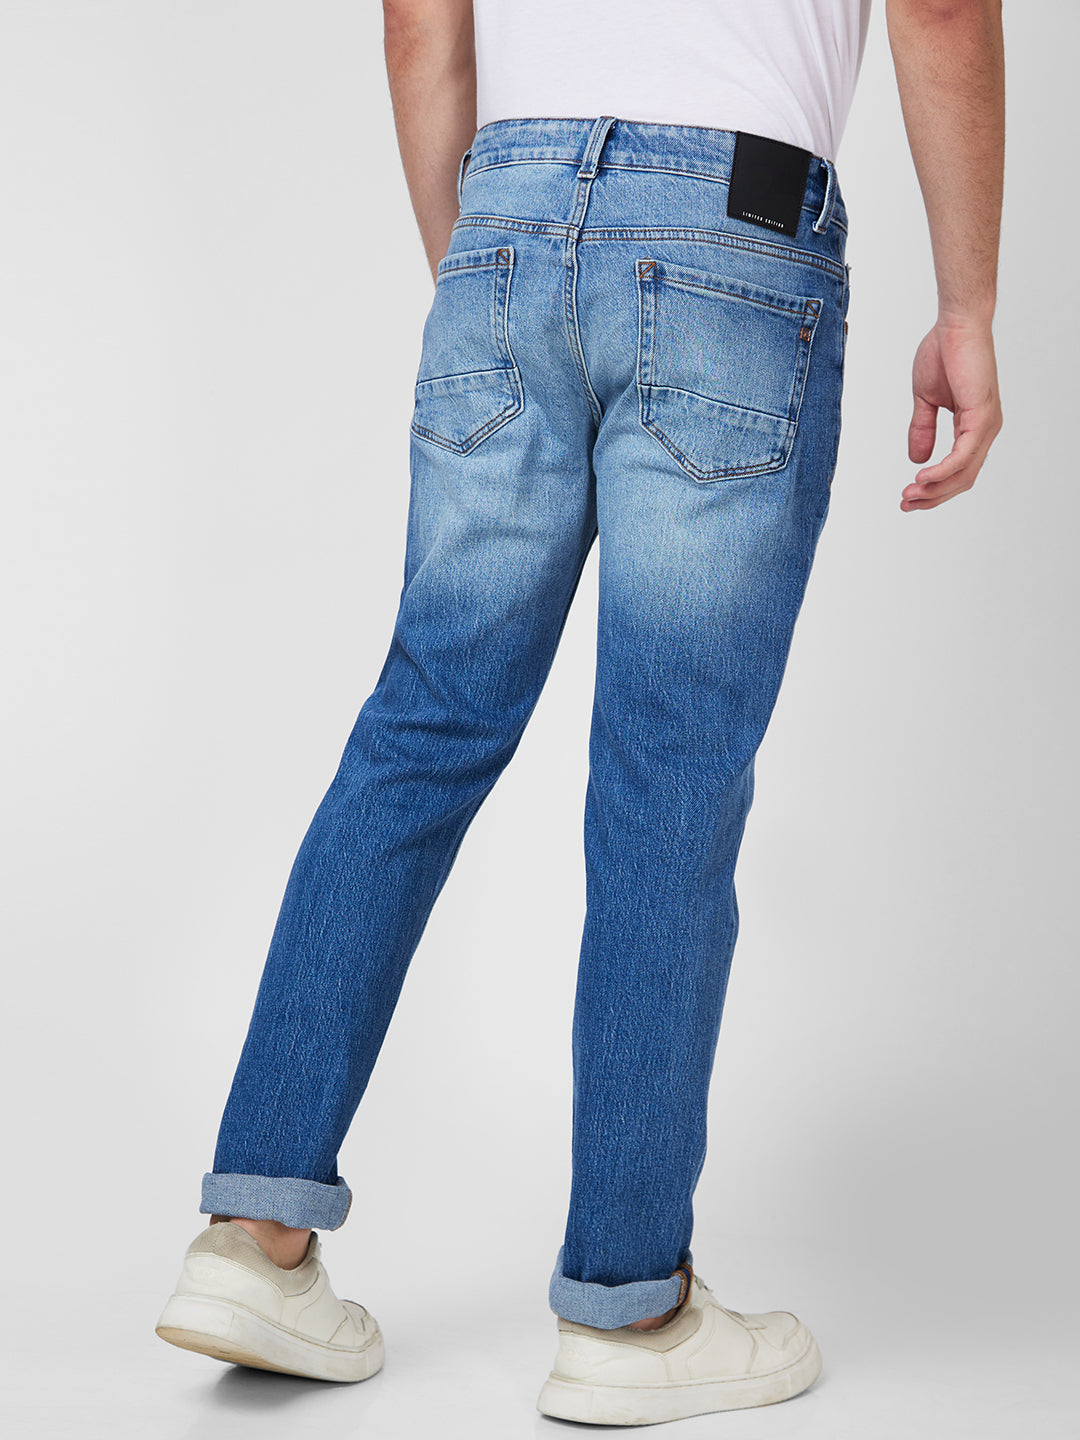 Spykar Mid Rise Regular Fit Narrow Length Blue Jeans For Men